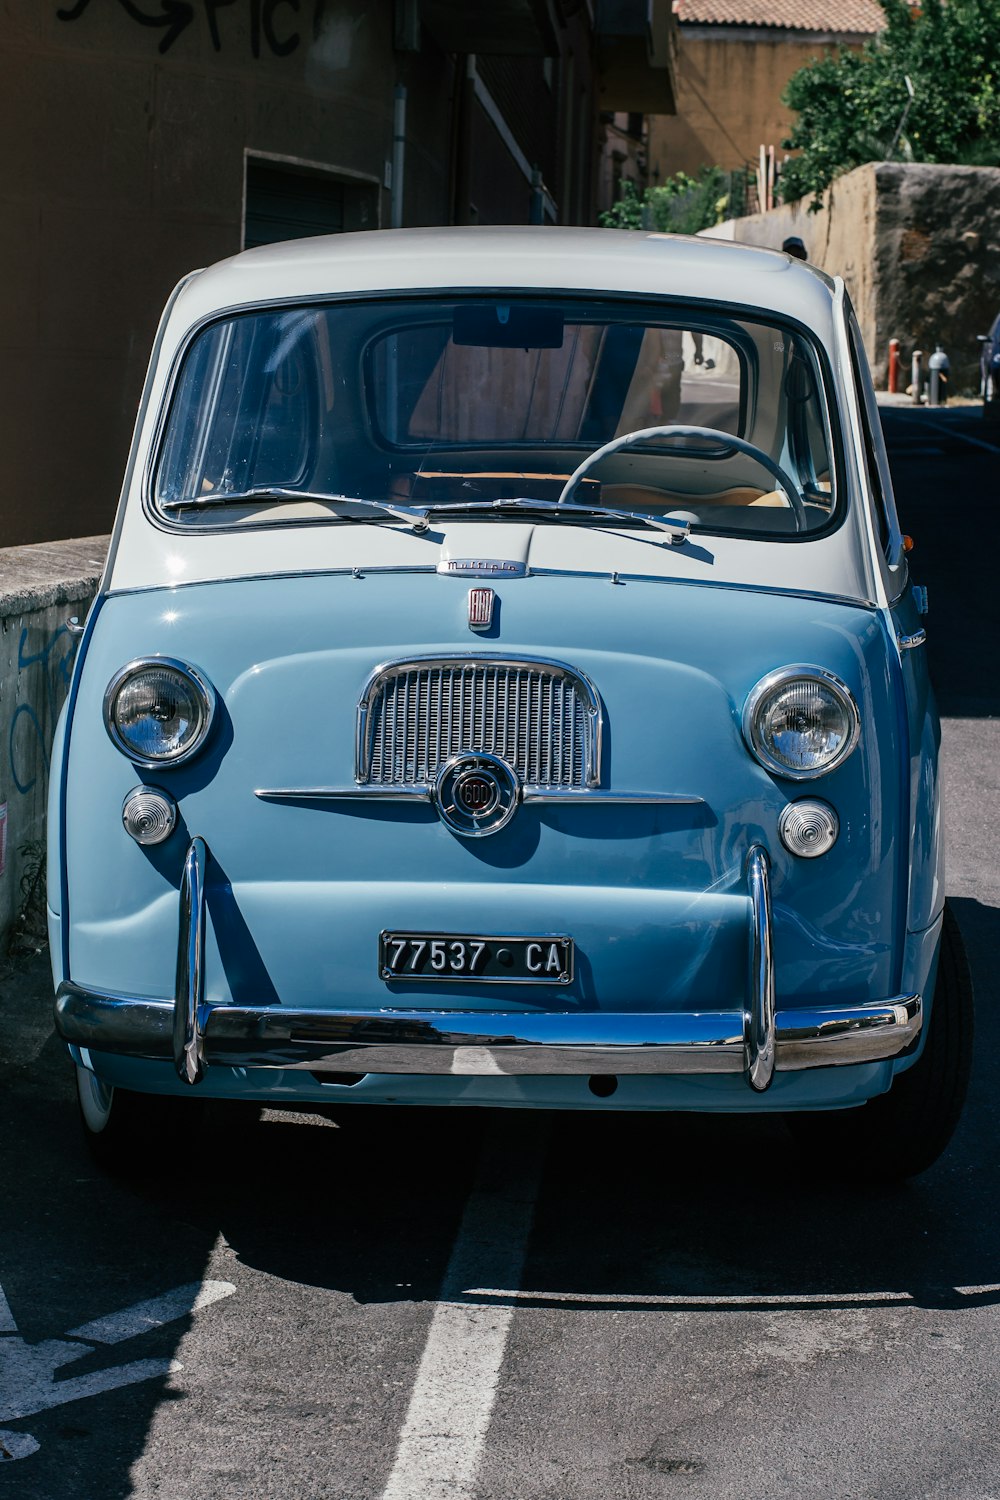 Un viejo coche azul estacionado en un estacionamiento